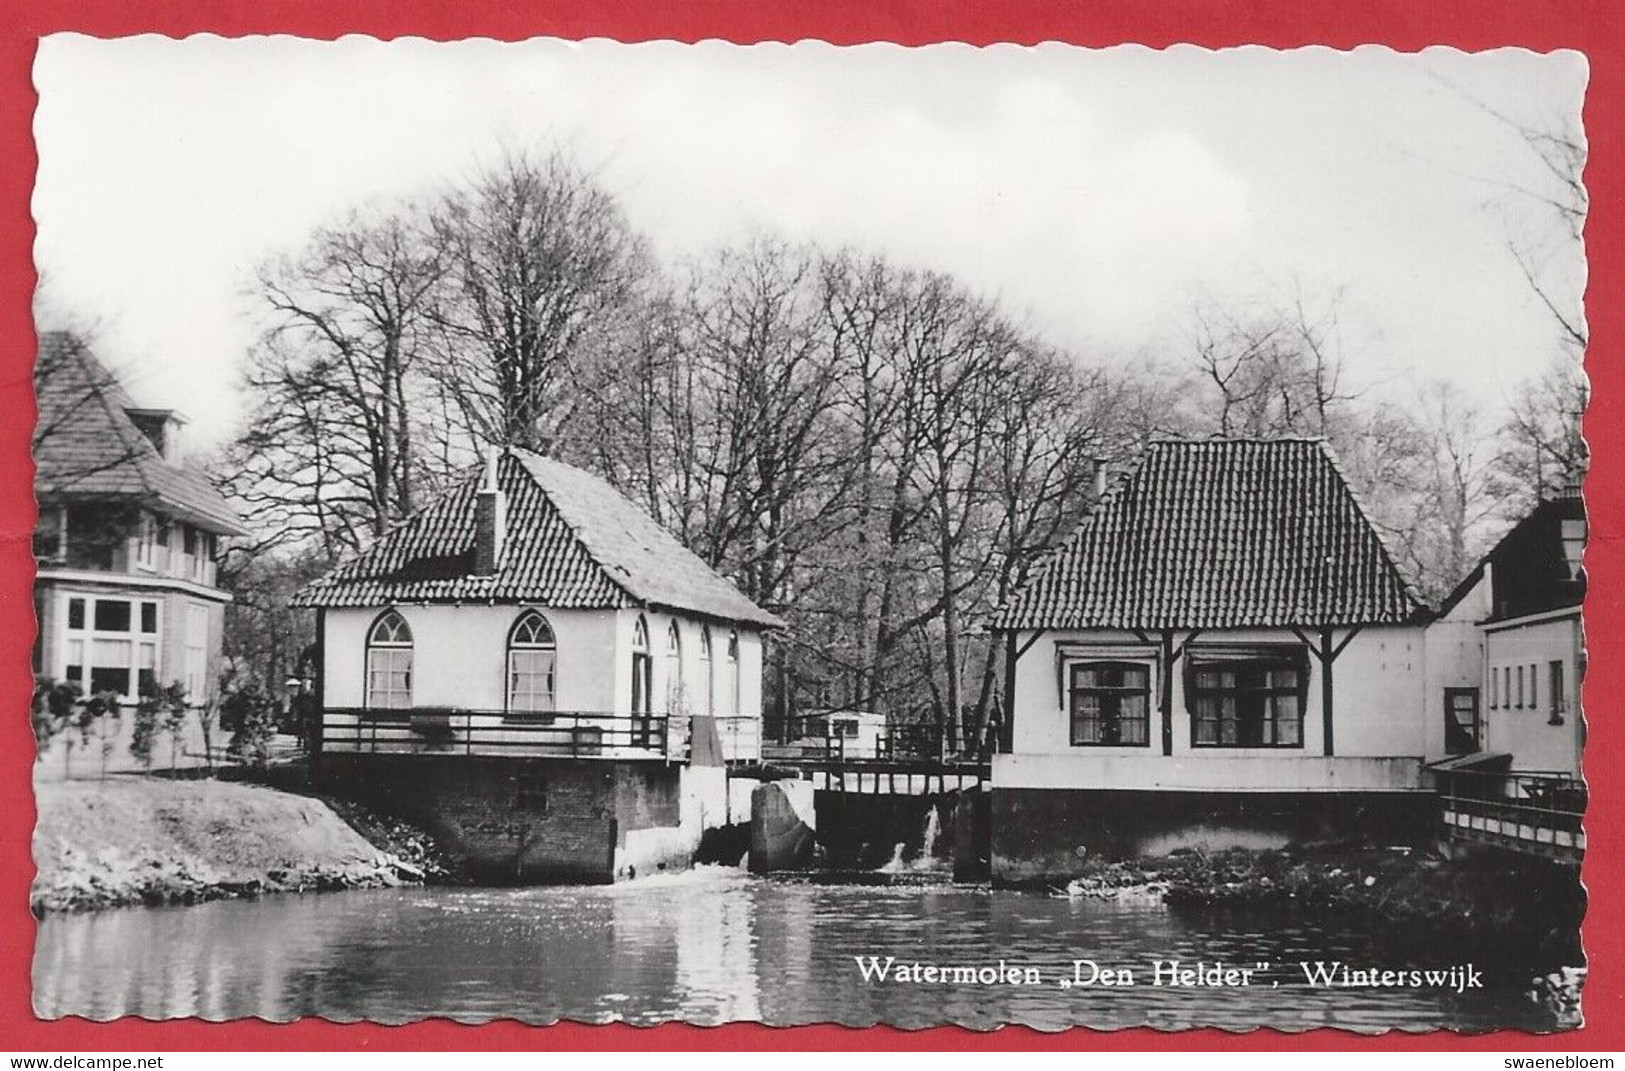 NL.- Winterswijk, Watermolen - Den Helder -. Uitgave Fa. H. W. Heinen, - Winterswijk